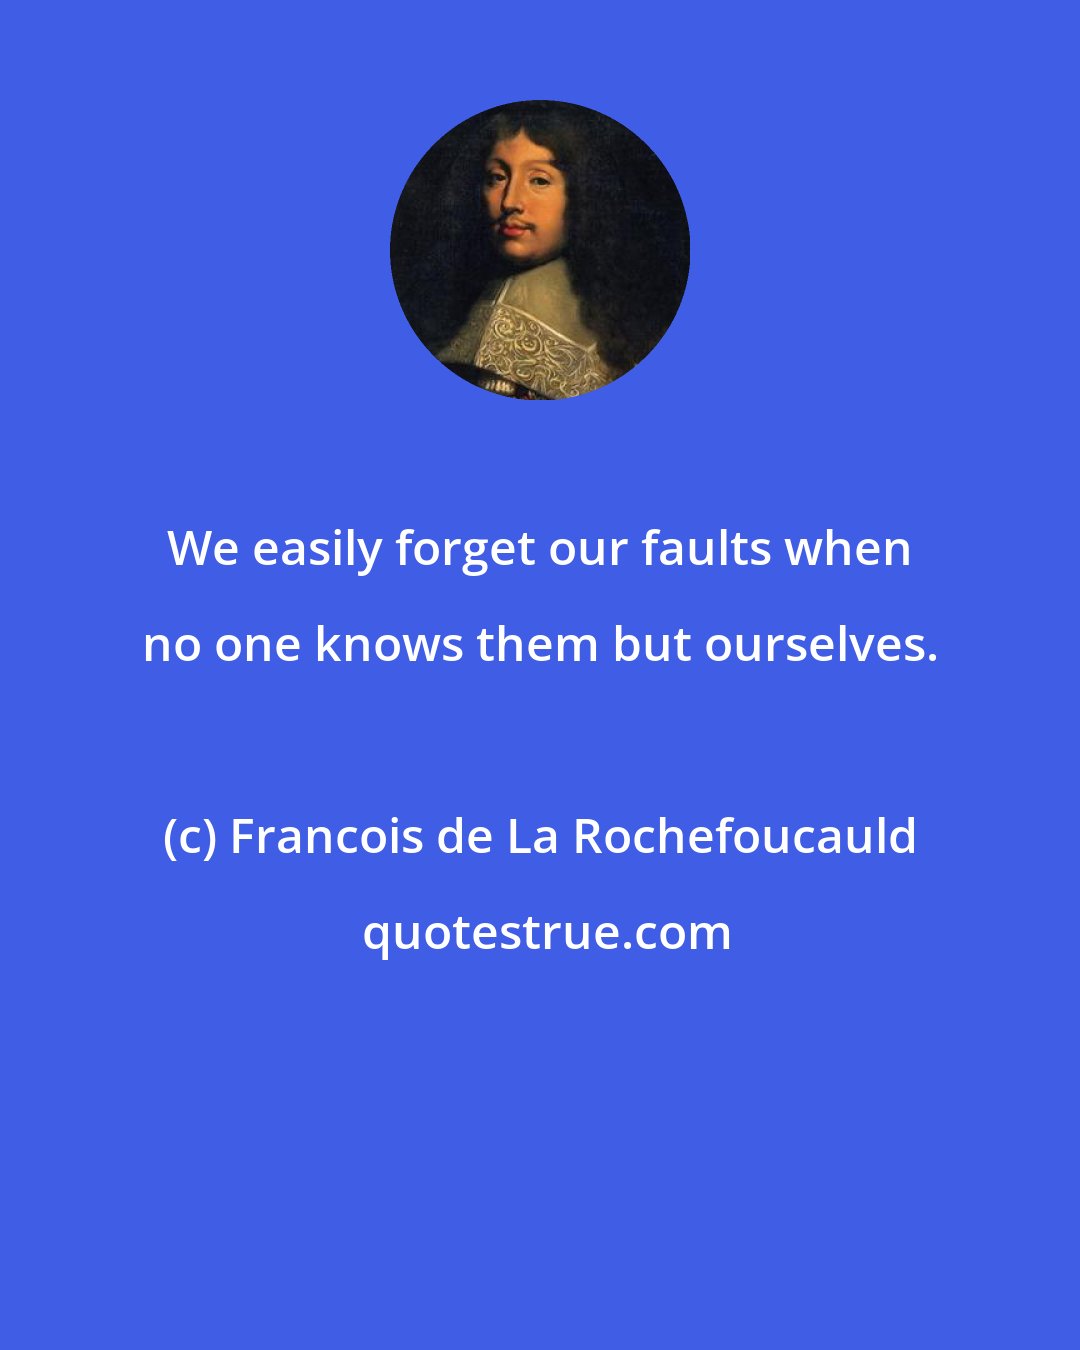 Francois de La Rochefoucauld: We easily forget our faults when no one knows them but ourselves.